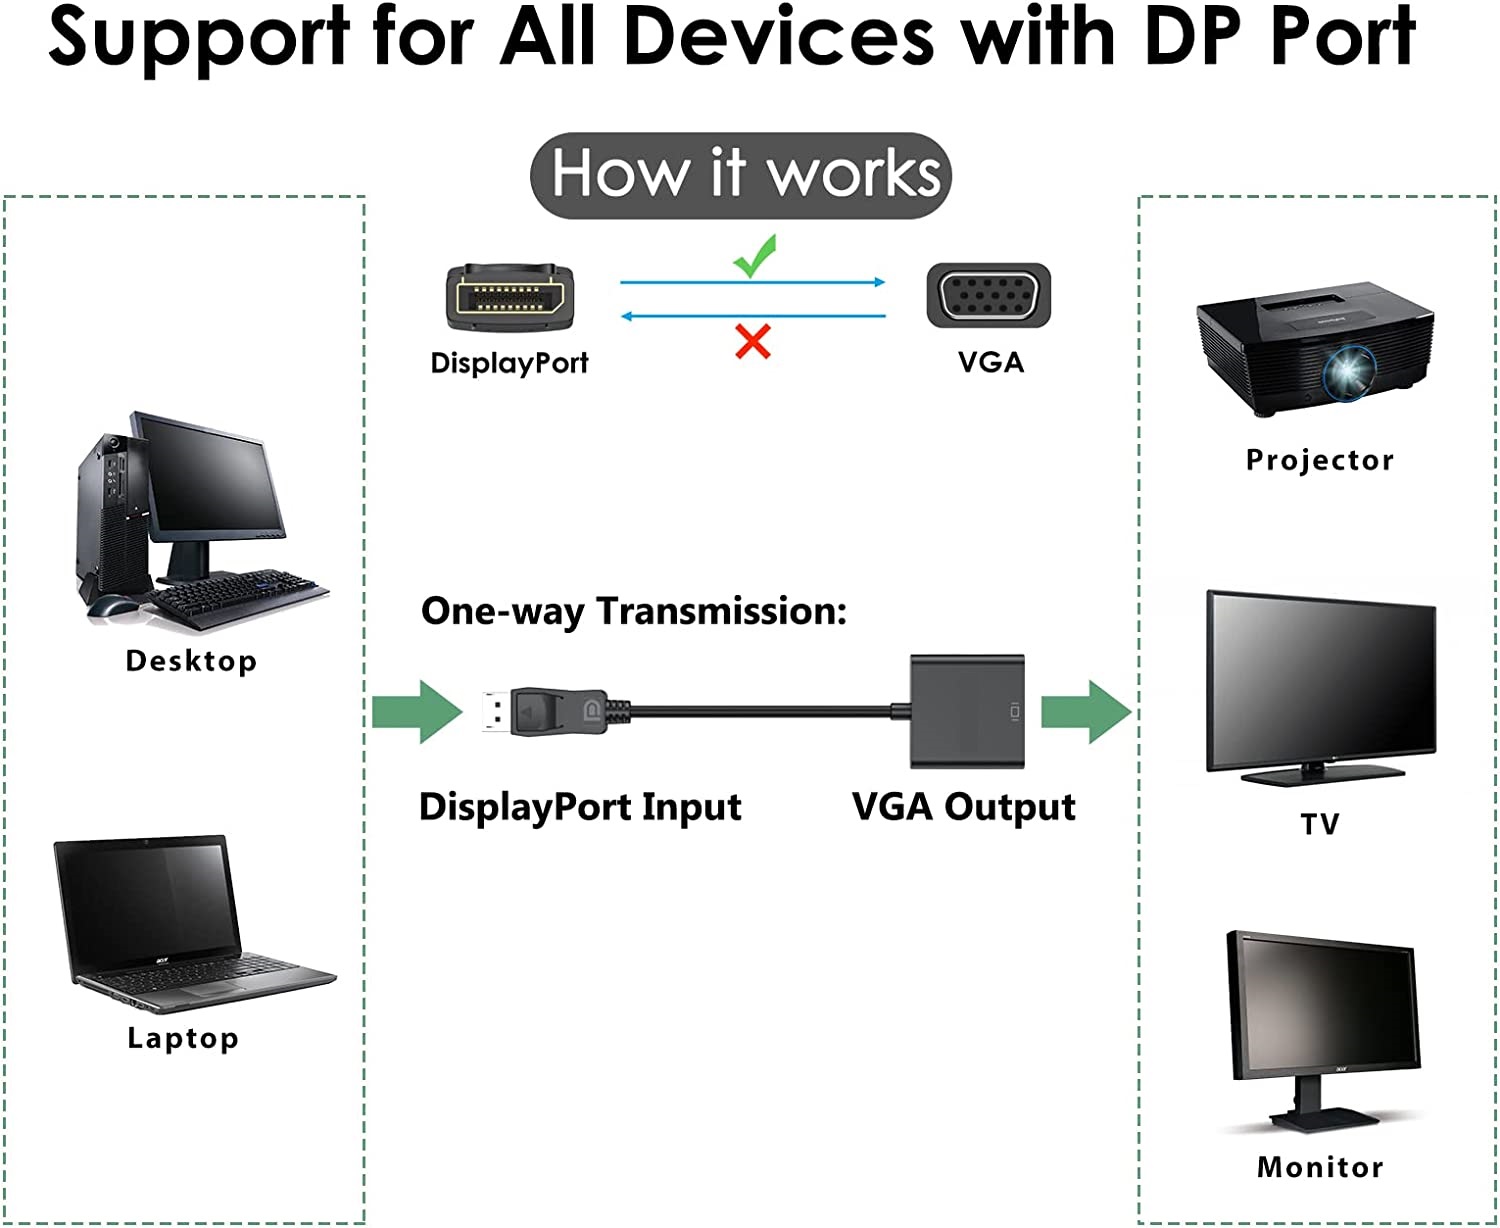 Адаптер Jiafen XD591 DP към VGA свързва настолен компютър или лаптоп с DisplayPort (DP, DisplayPort++, DP++) към монитор, дисплей, проектор или HDTV с VGA вход